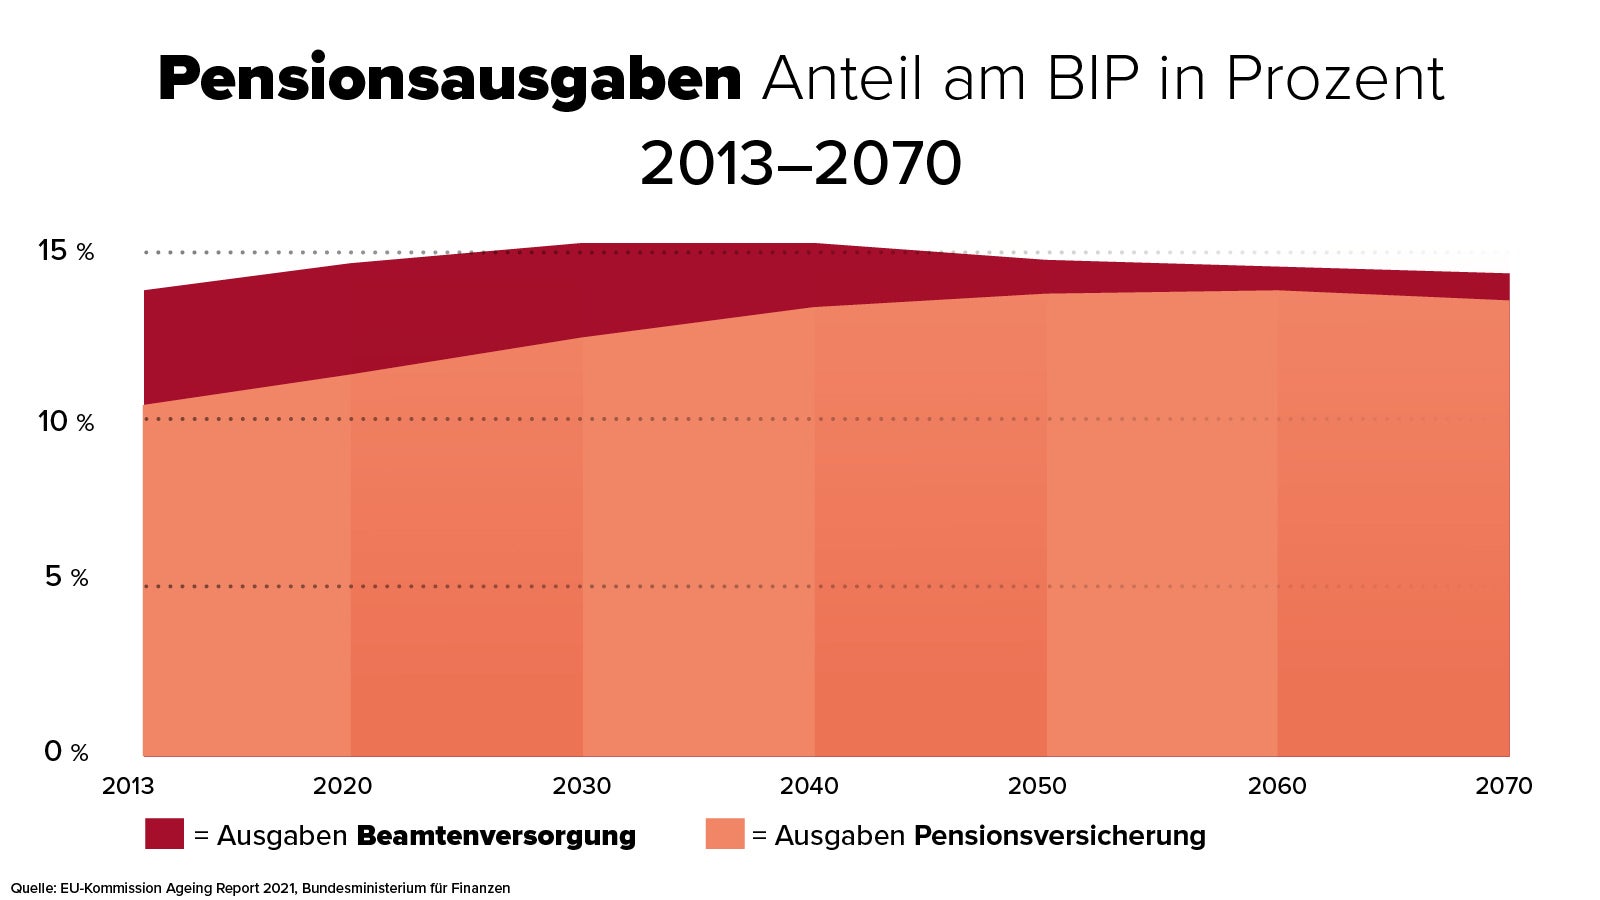 Laut dem EU-Ageing-Report 2021 sind die Ausgaben für die Pensionen in Österreich in den nächsten Jahrzehnten stabil. Während von einem Anstieg der Ausgaben für die gesetzliche Pensionsversicherung aufgrund der demographischen Entwicklung ausgegangen wird, werden sich gleichzeitig die Aufwendungen für die Beamtenpensionen reduzieren.